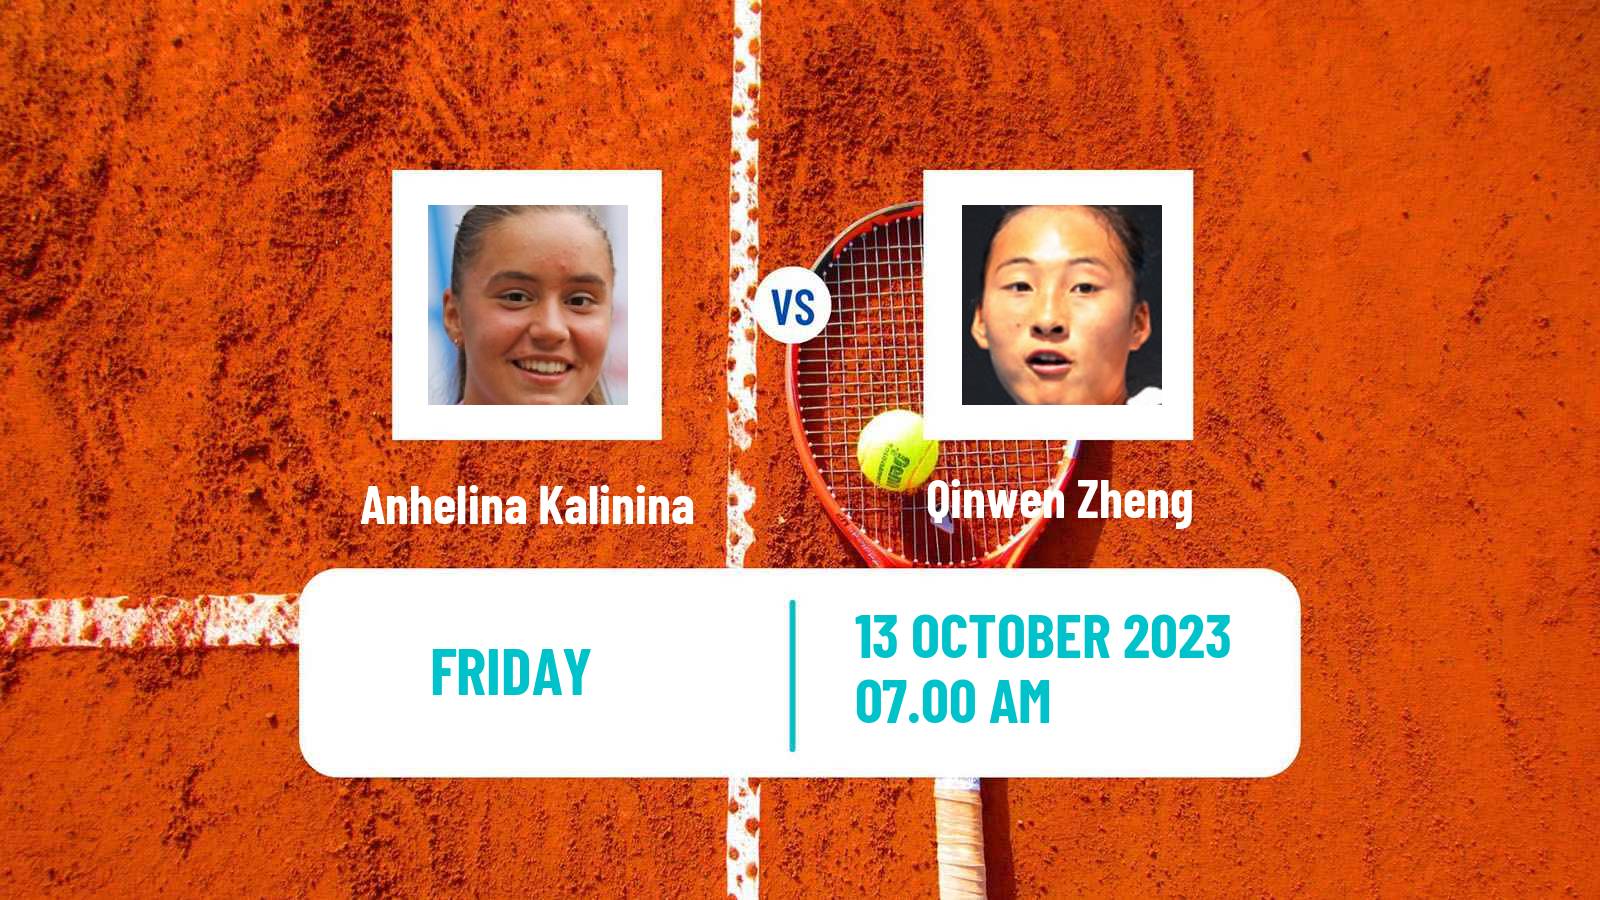 Tennis WTA Zhengzhou Anhelina Kalinina - Qinwen Zheng